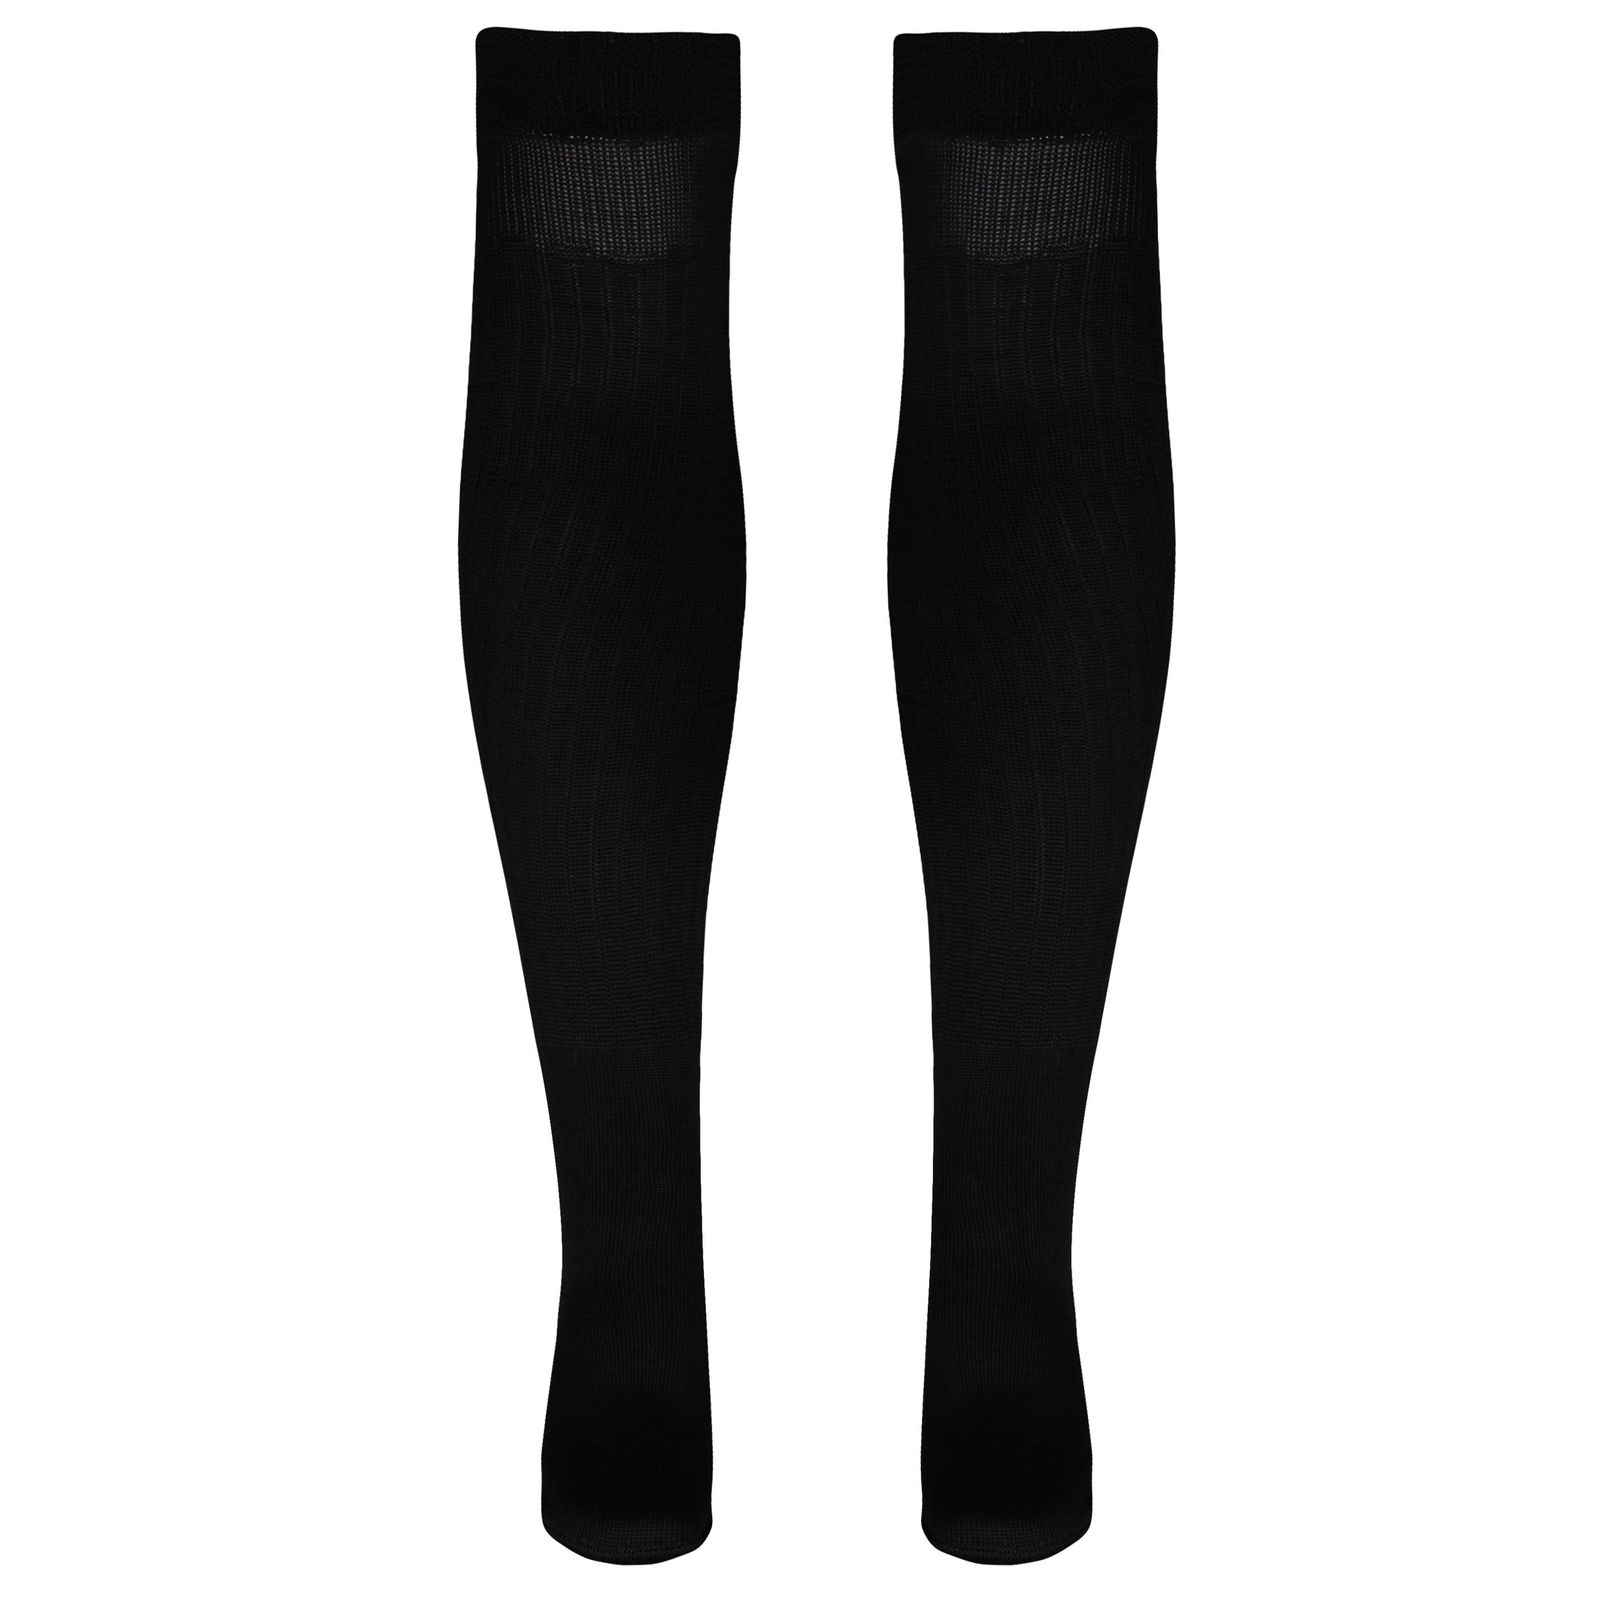 جوراب ساق بلند ورزشی  زنانه ماییلدا مدل 4185 رنگ مشکی -  - 2